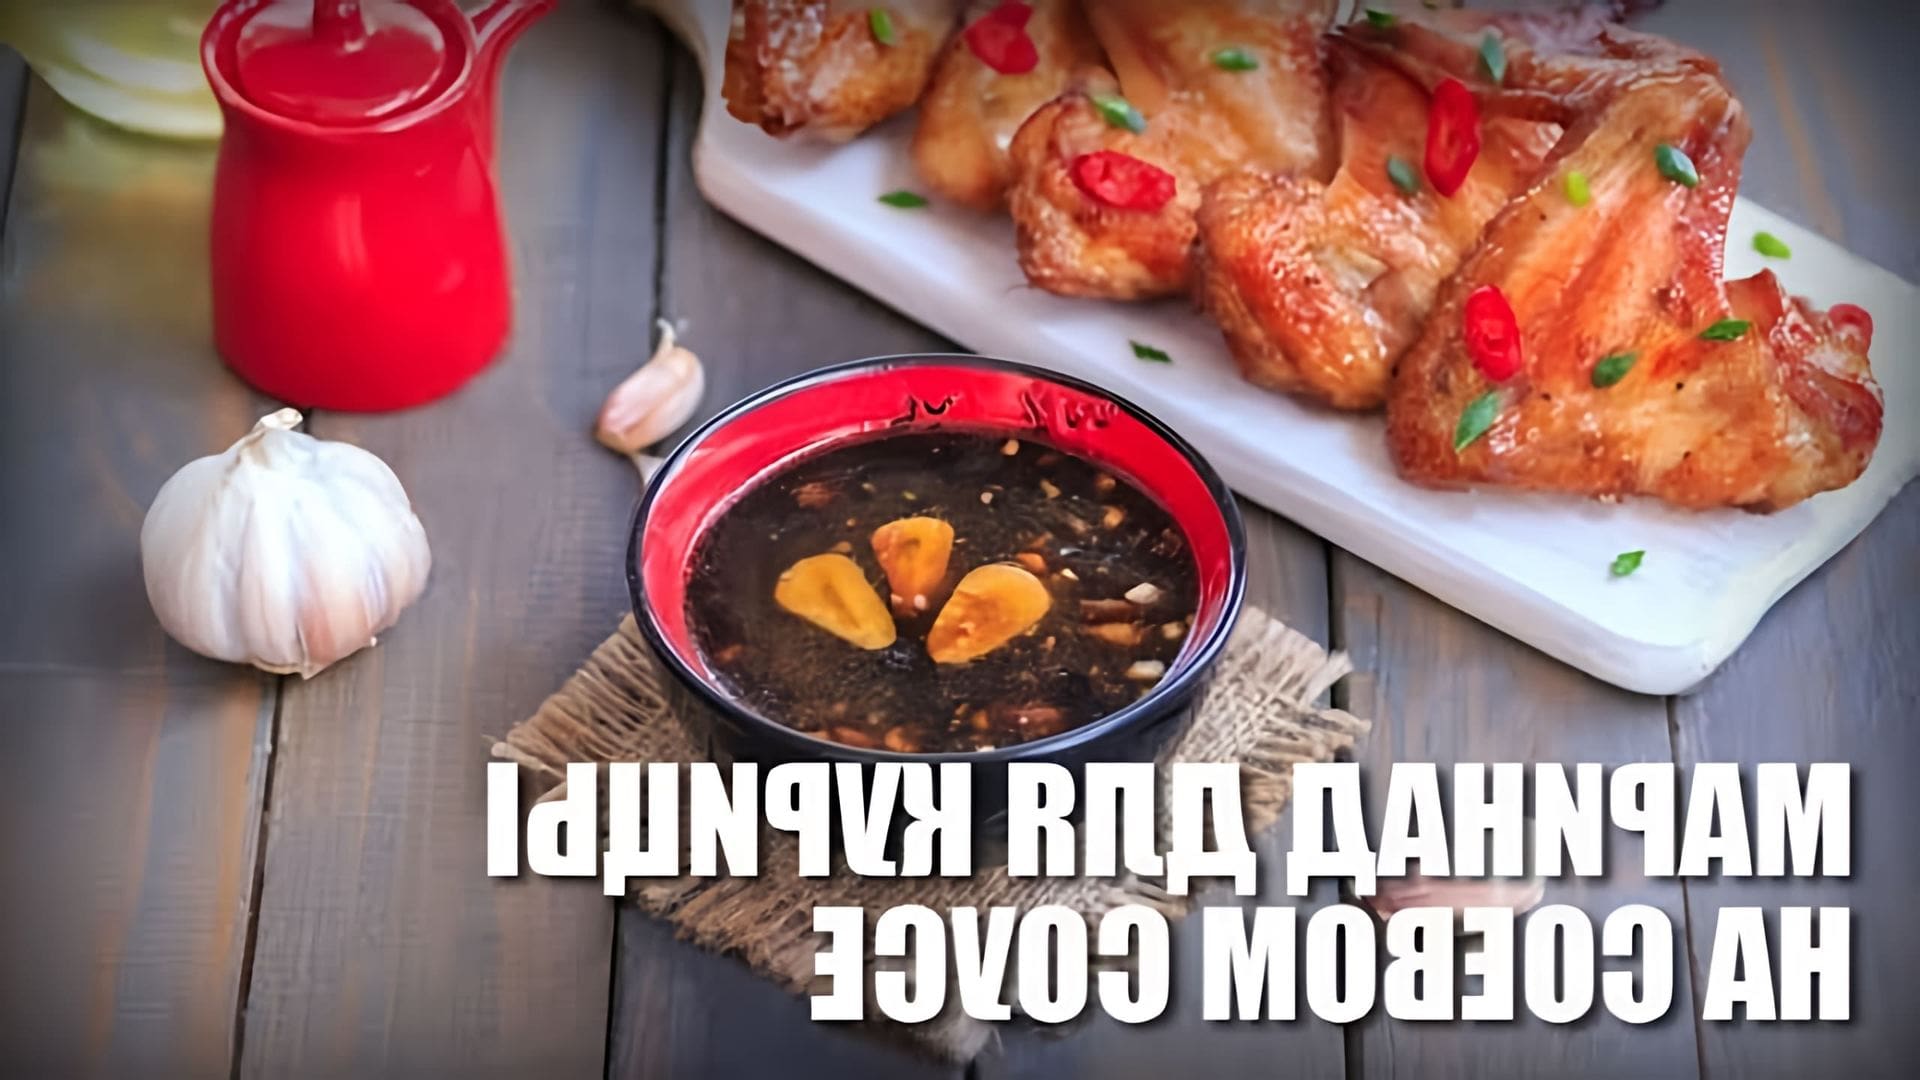 Маринад для курицы на соевом соусе — видео рецепт

В этом видео-ролике вы увидите, как приготовить вкусный и ароматный маринад для курицы на основе соевого соуса